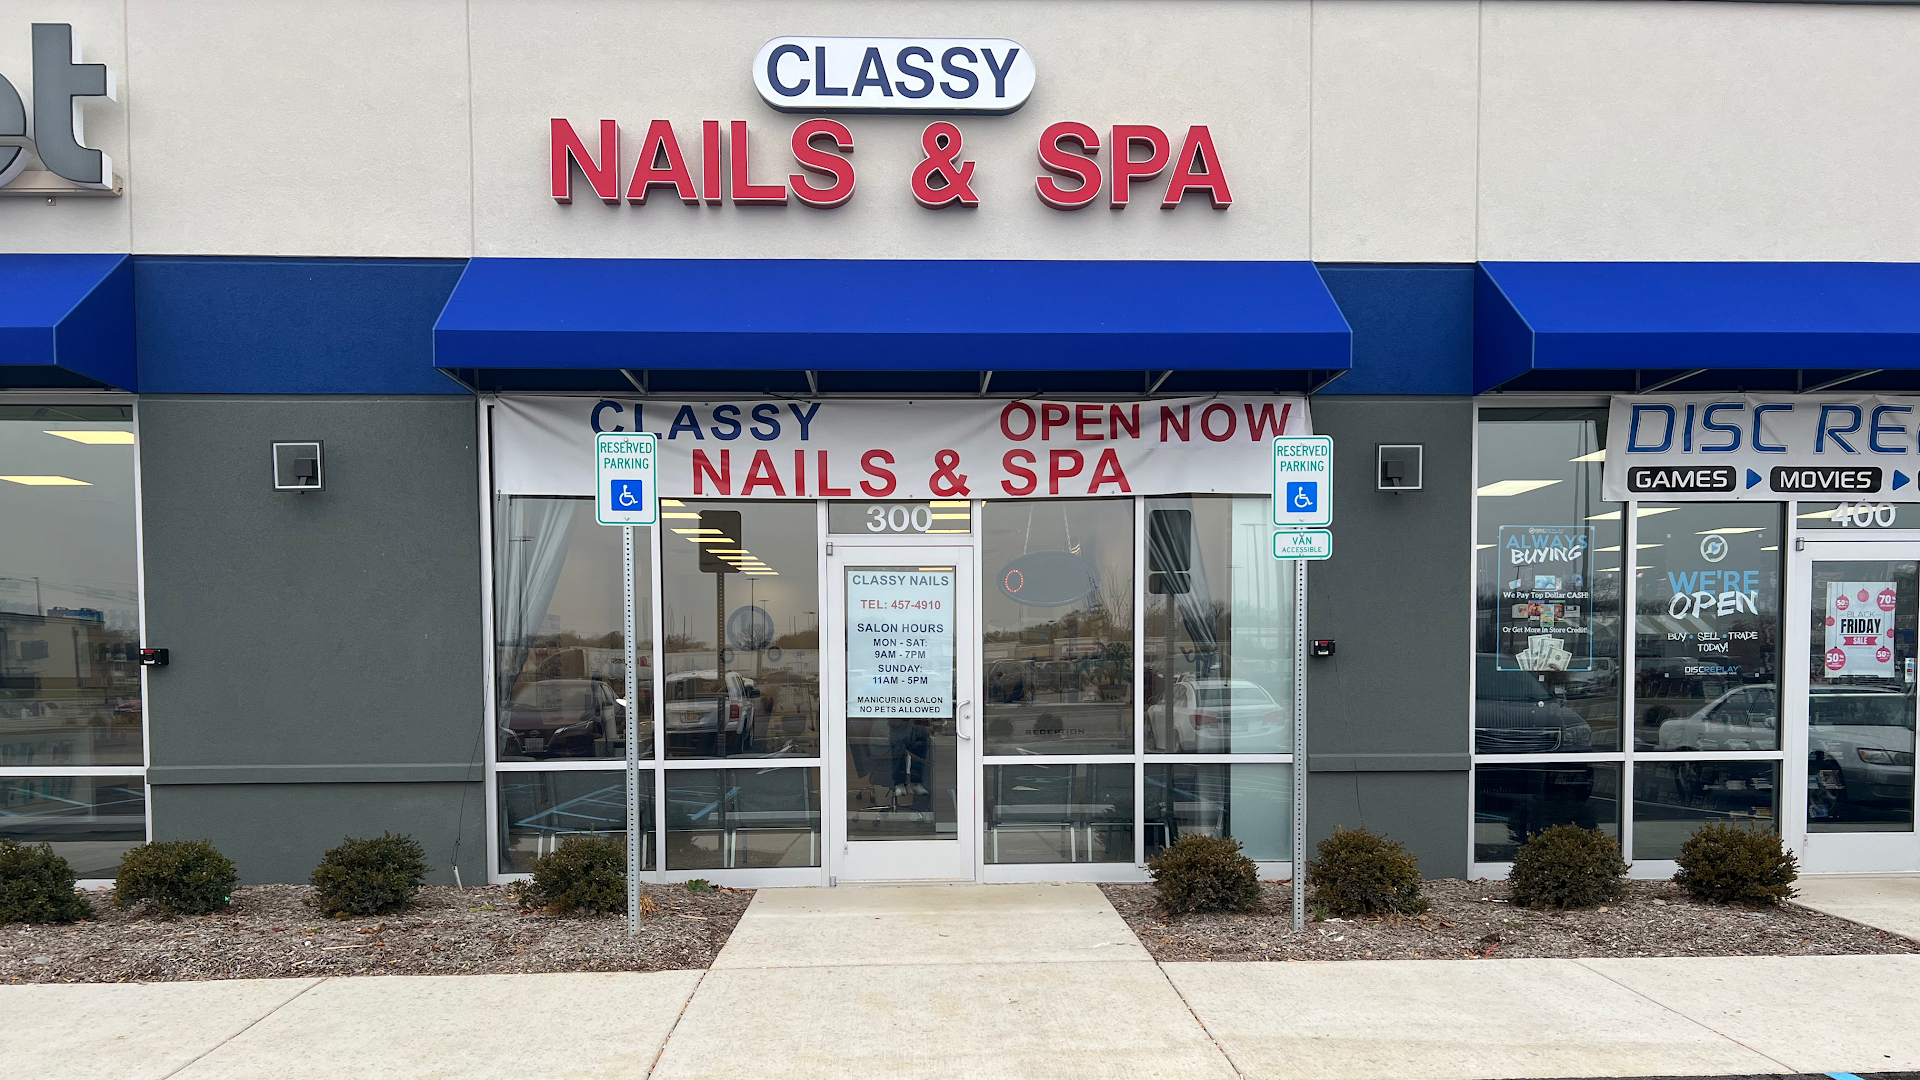 Classy Nails & Spa